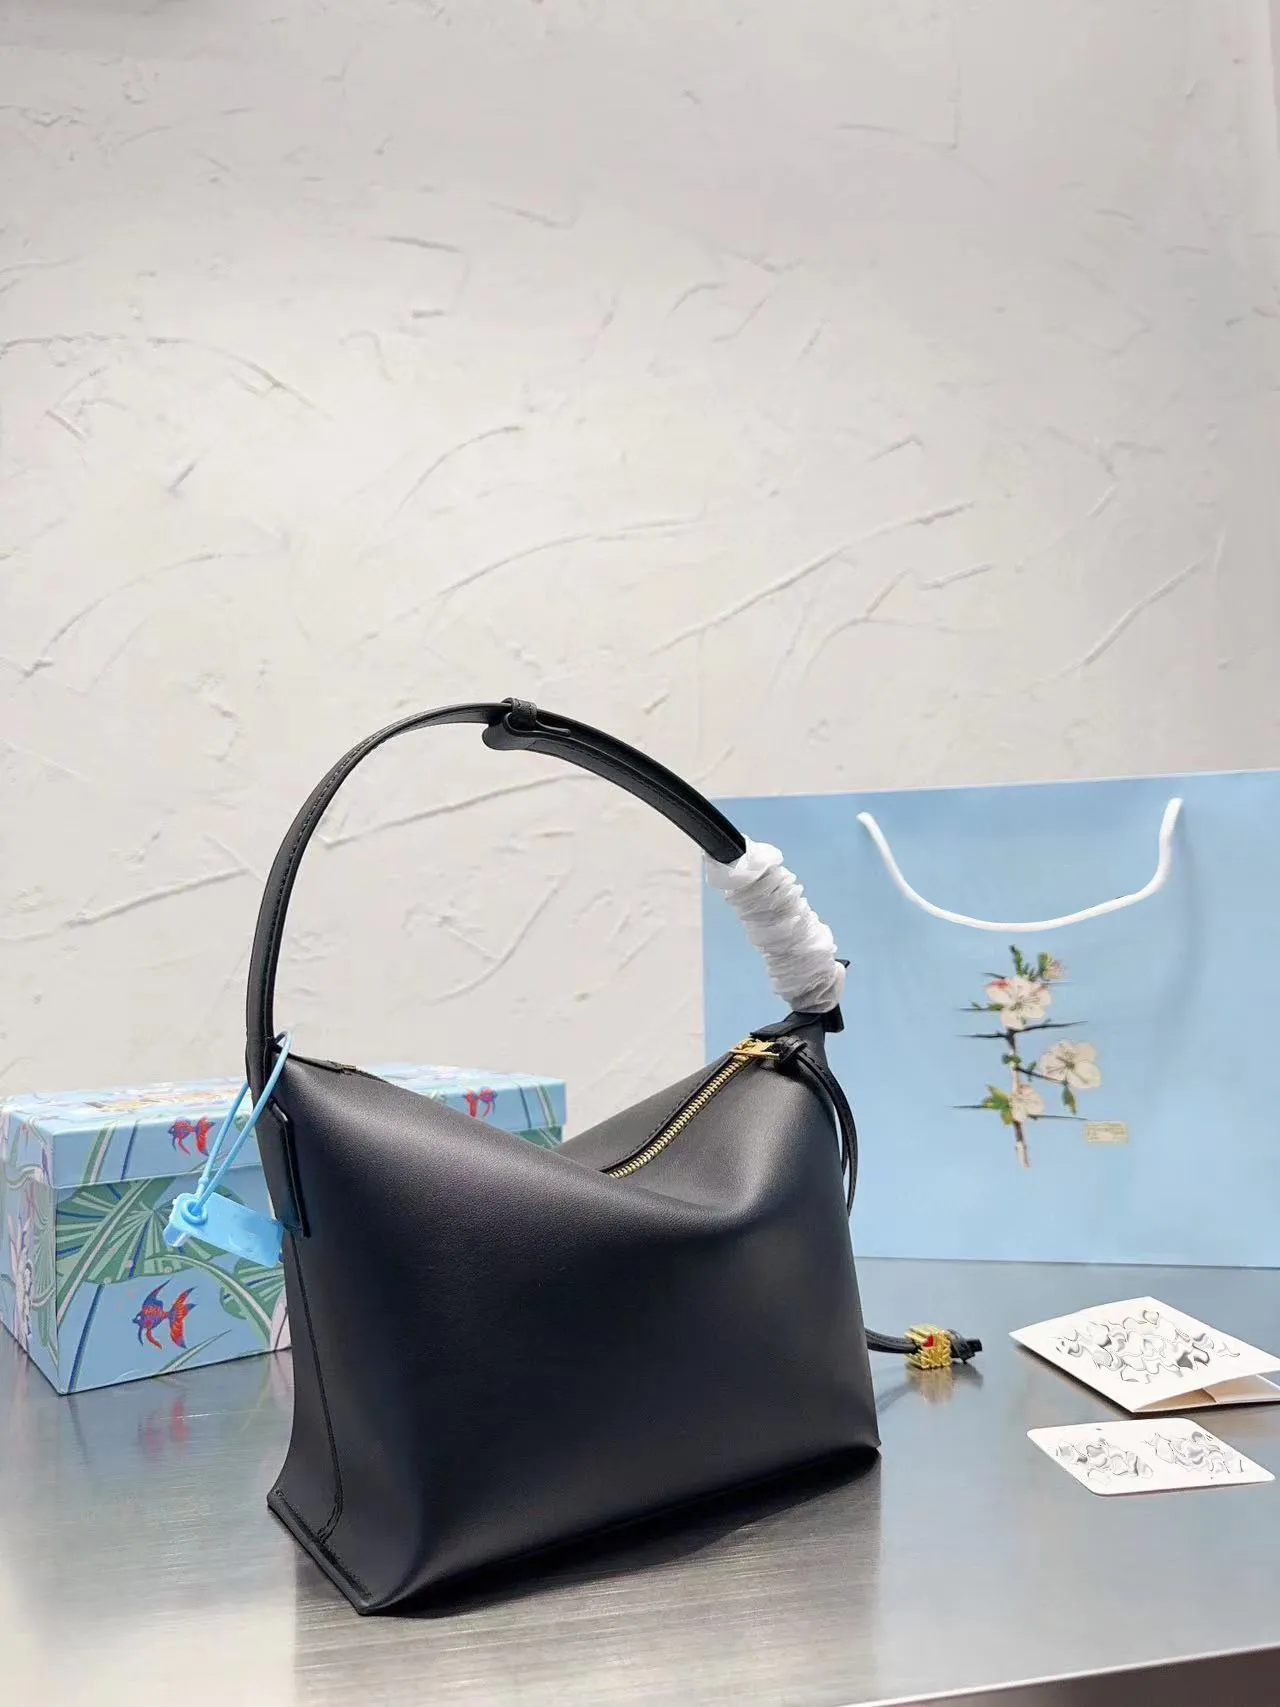 2022 Ny underarm Bag kvinnors handväska Fashion Casual Bag Luxury Bag broderi design med premiumkänsla axelbandjustering har special